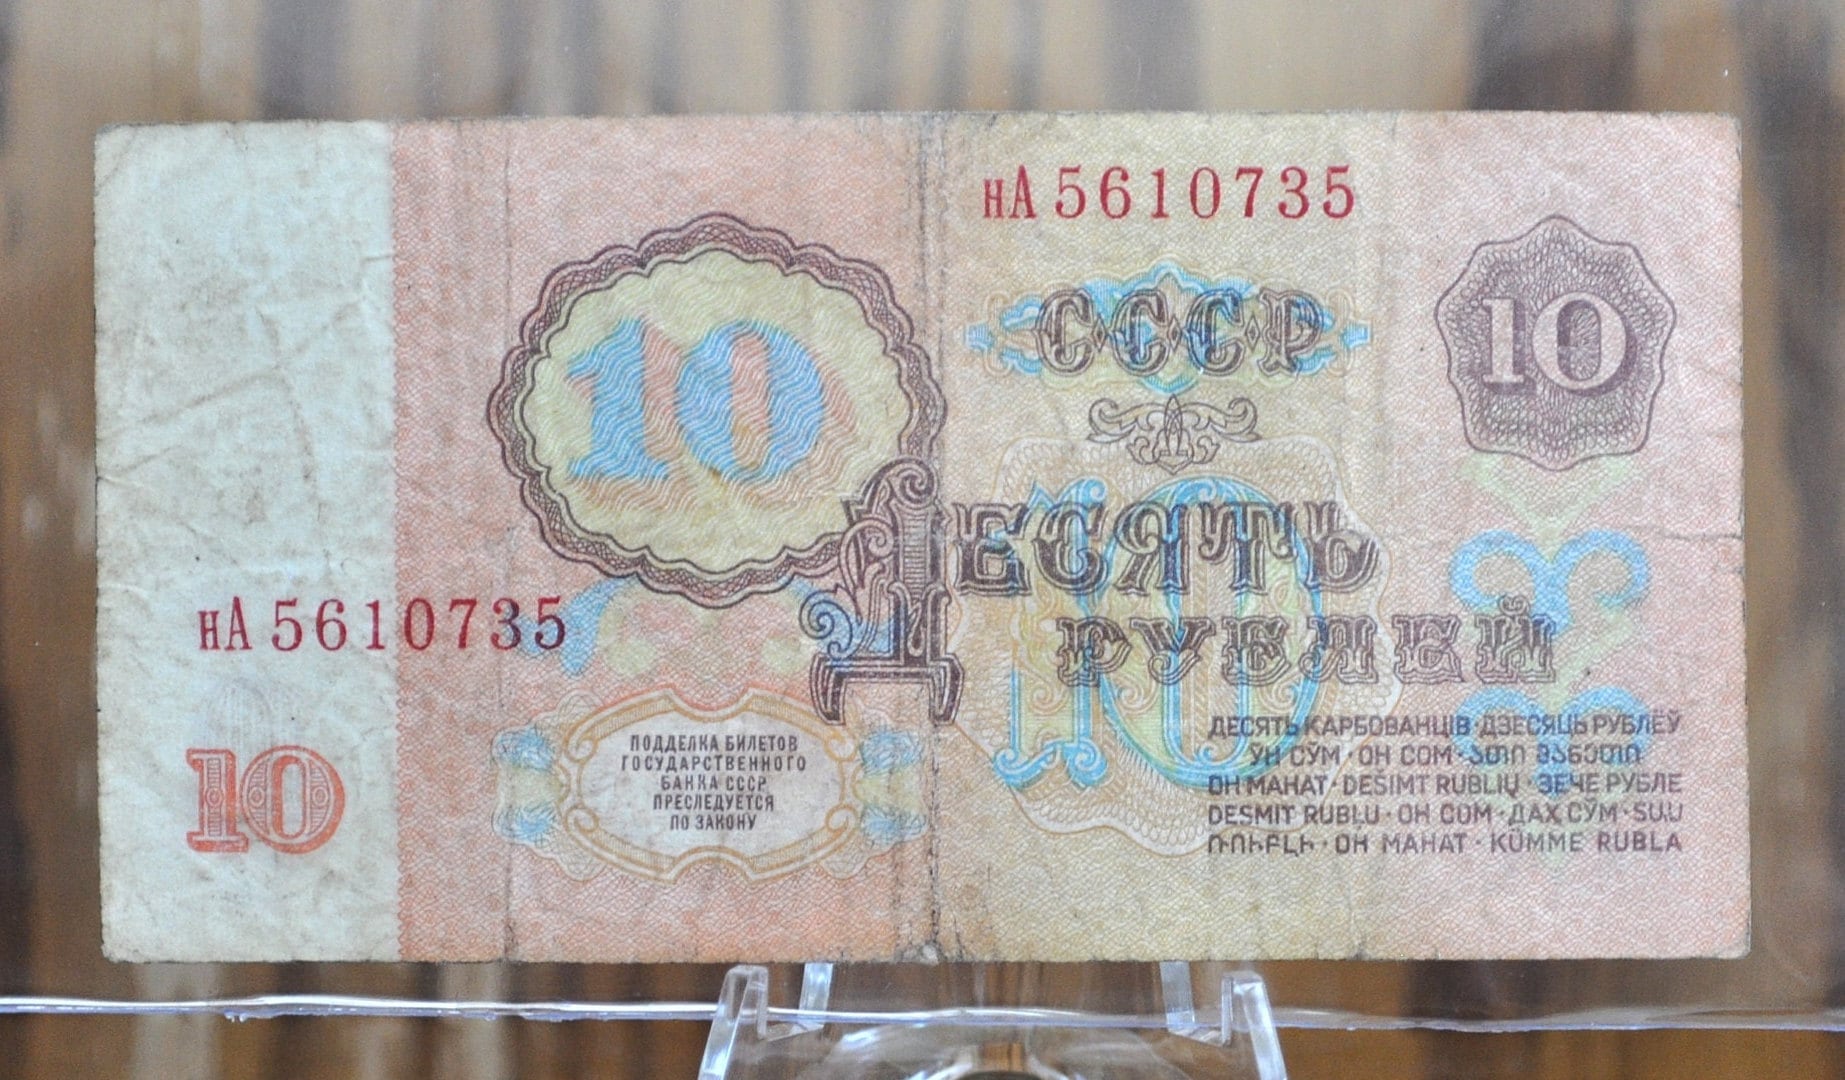 1961 Russian 10 Ruble Banknotes - Vladimir Lenin - Soviet Russia 1961 Ten Rubles USSR, Old Soviet Russia Money